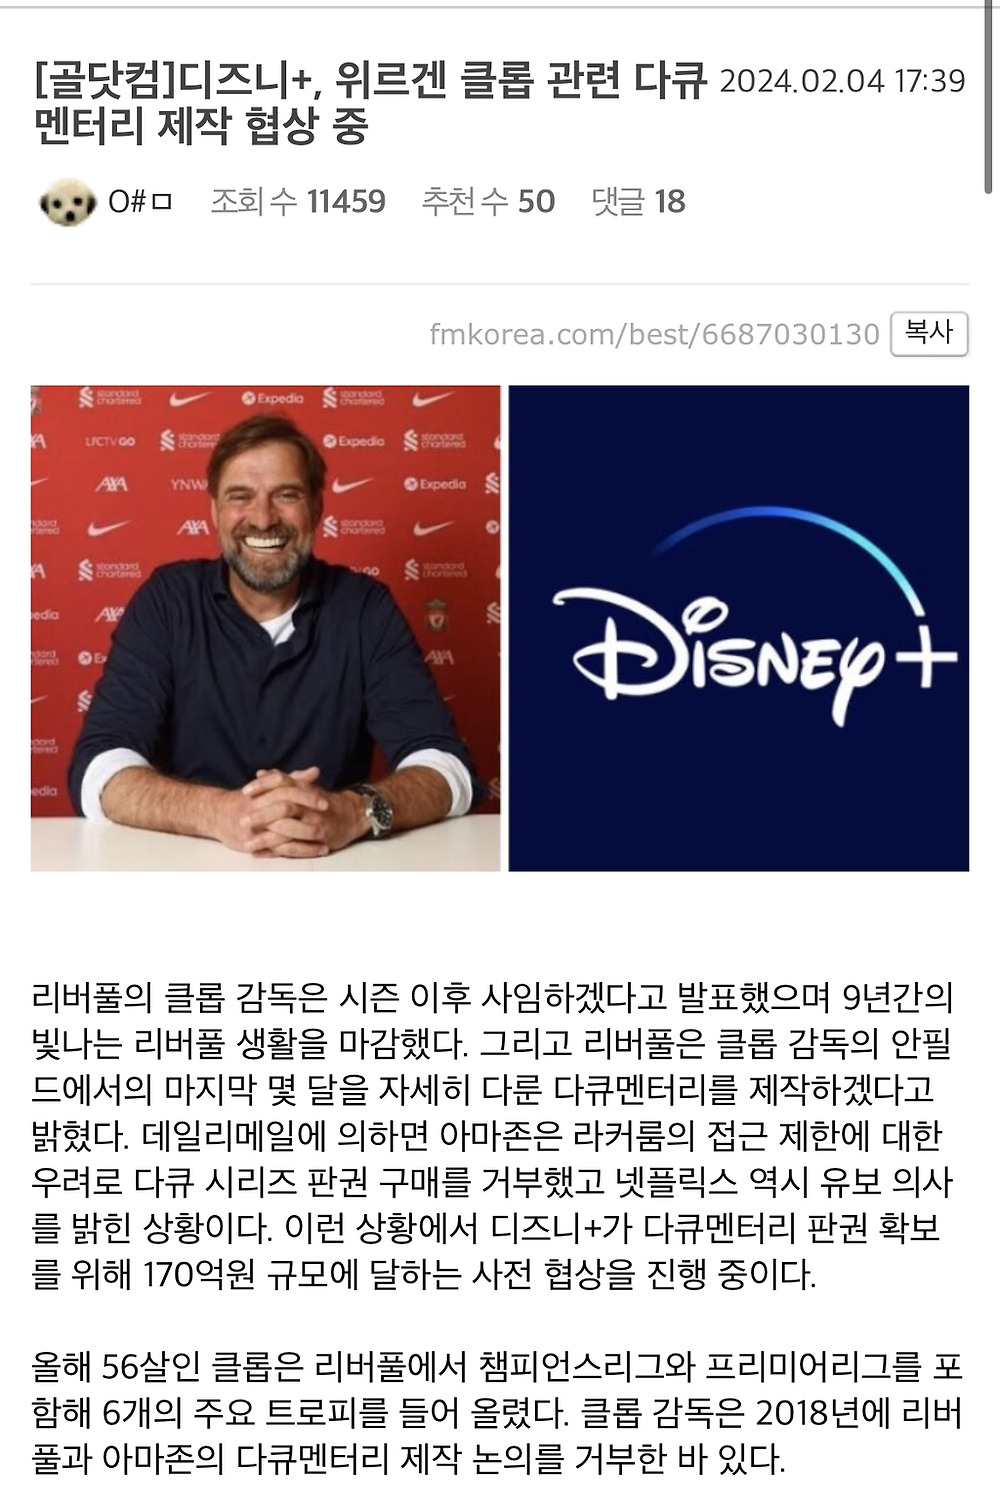 [해외정보][골닷컴]디즈니+, 위르겐 클롭 관련 다큐멘터리 제작 협상 중 -cboard